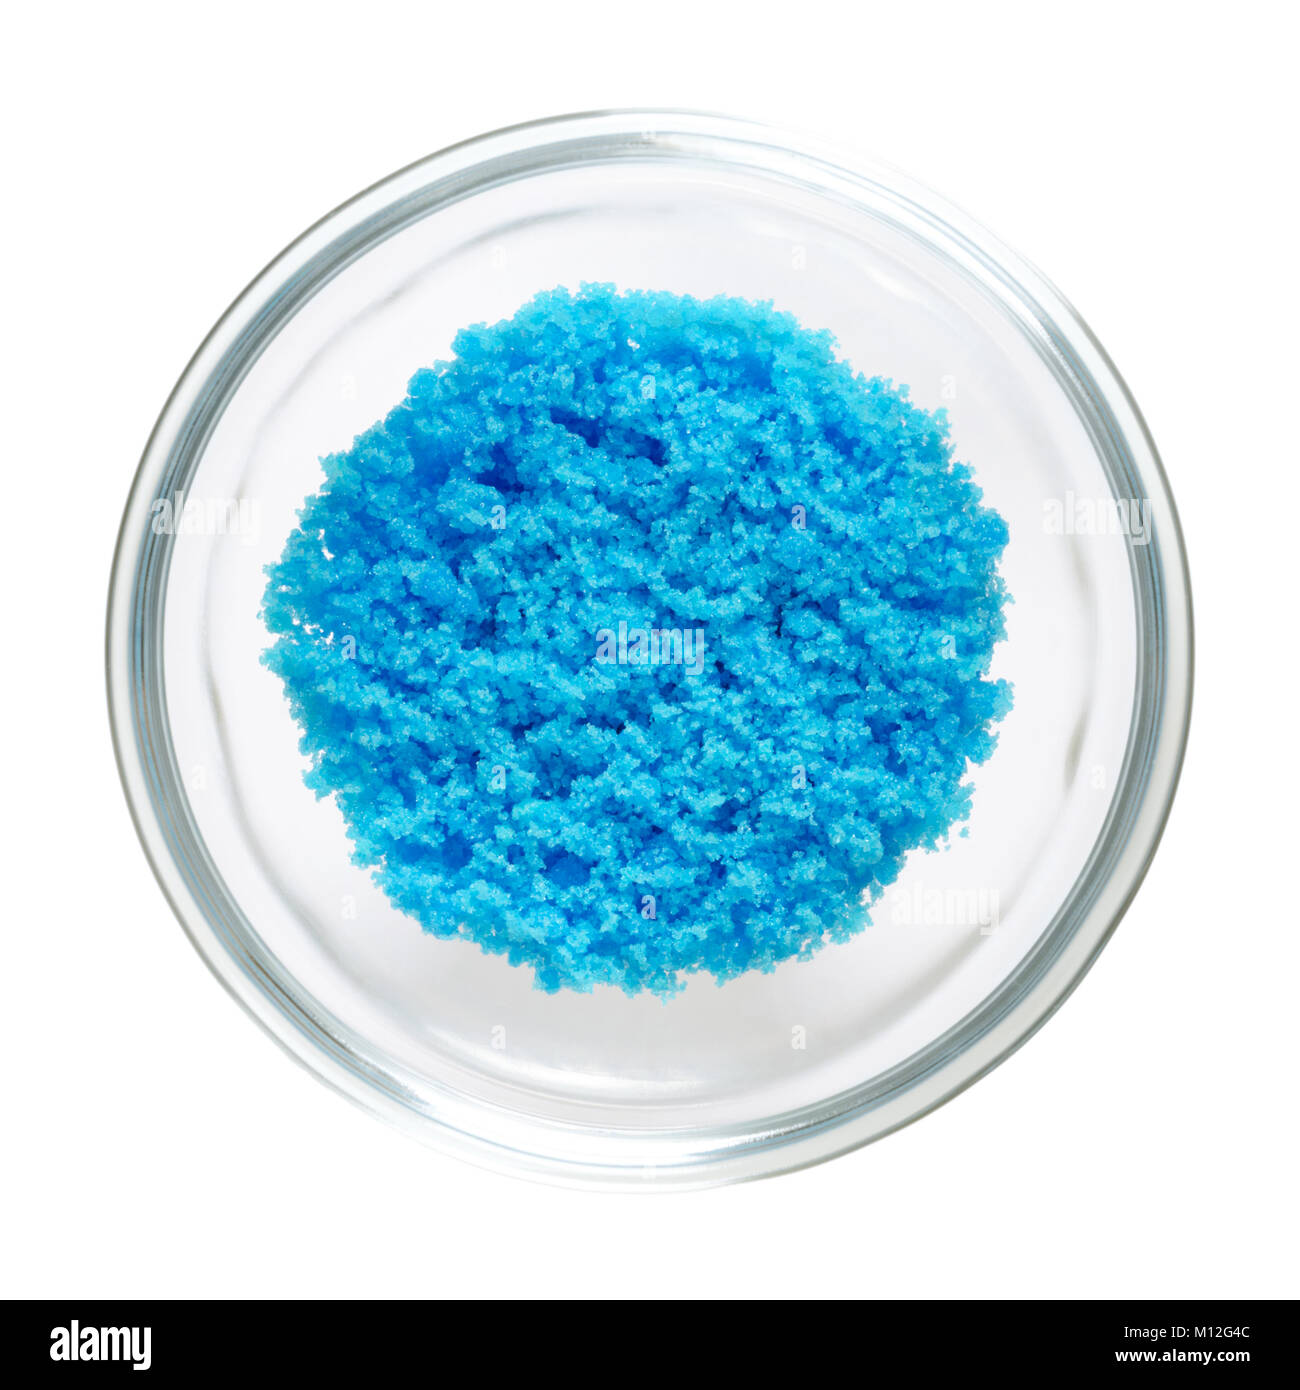 En sulfate cuivrique bol en verre, isolé sur fond blanc. Bleu lumineux du sulfate de cuivre CuSO4, aussi vitriol bleu ou pierre bleue. Le sel. Photo. Banque D'Images